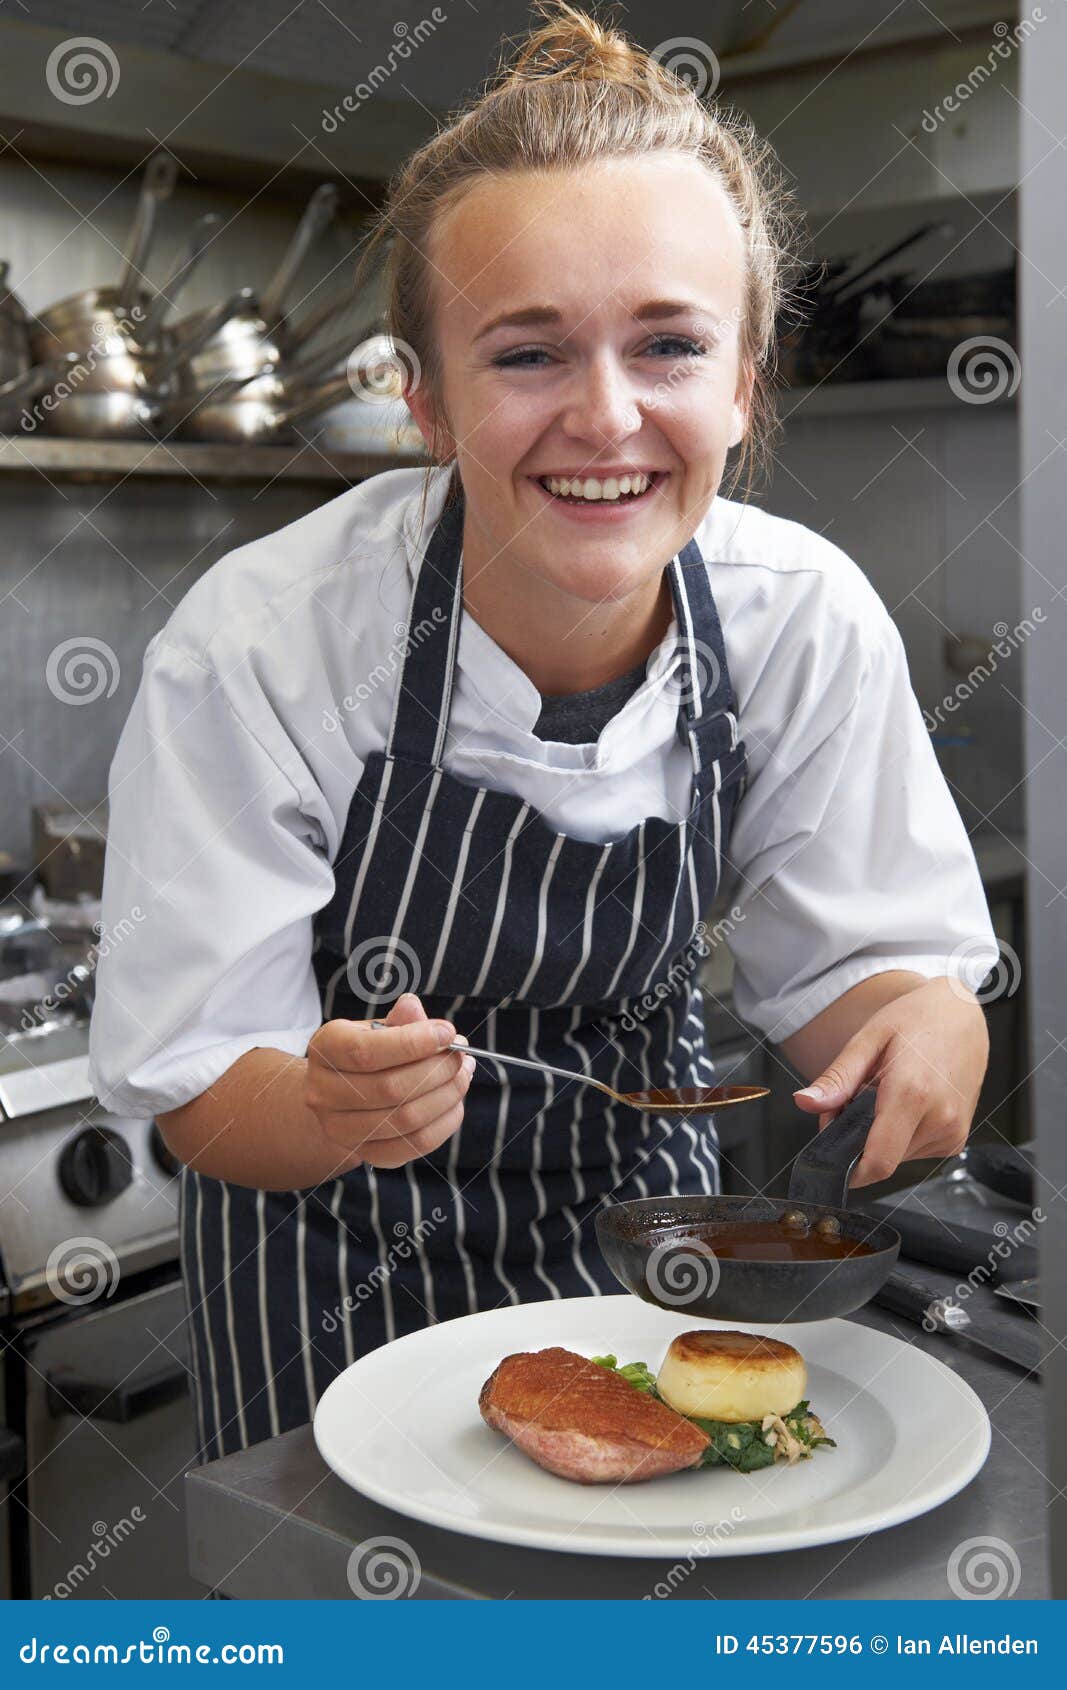 trainee chef working in restaurant kitchen